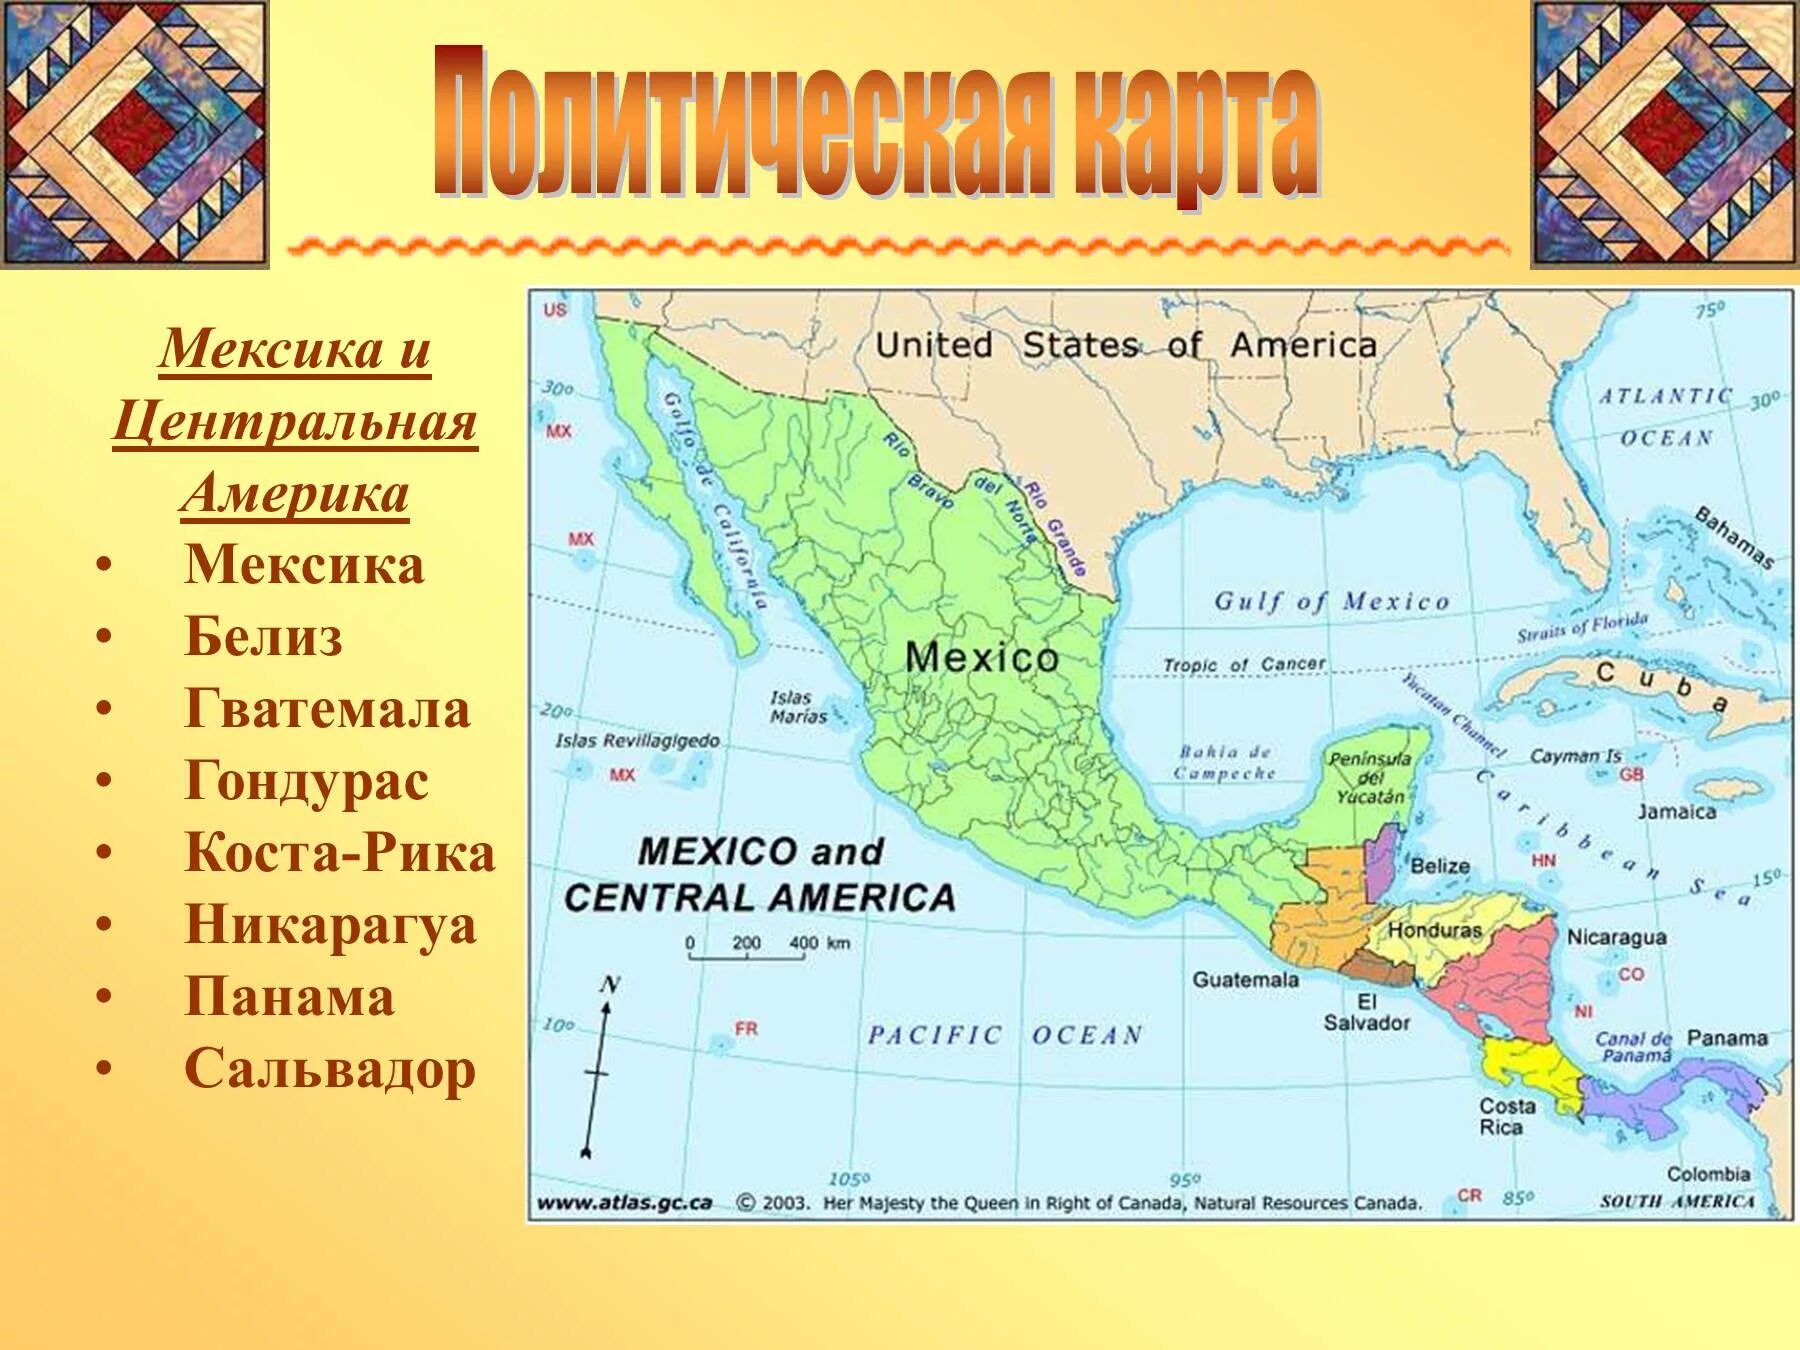 Государственный язык центральной америки. Государства центральной Америки на карте. Латинская Америка Центральная Америка Вест-Индия. Политическая карта центральной Америки со странами. Карта центральной Америки со странами.